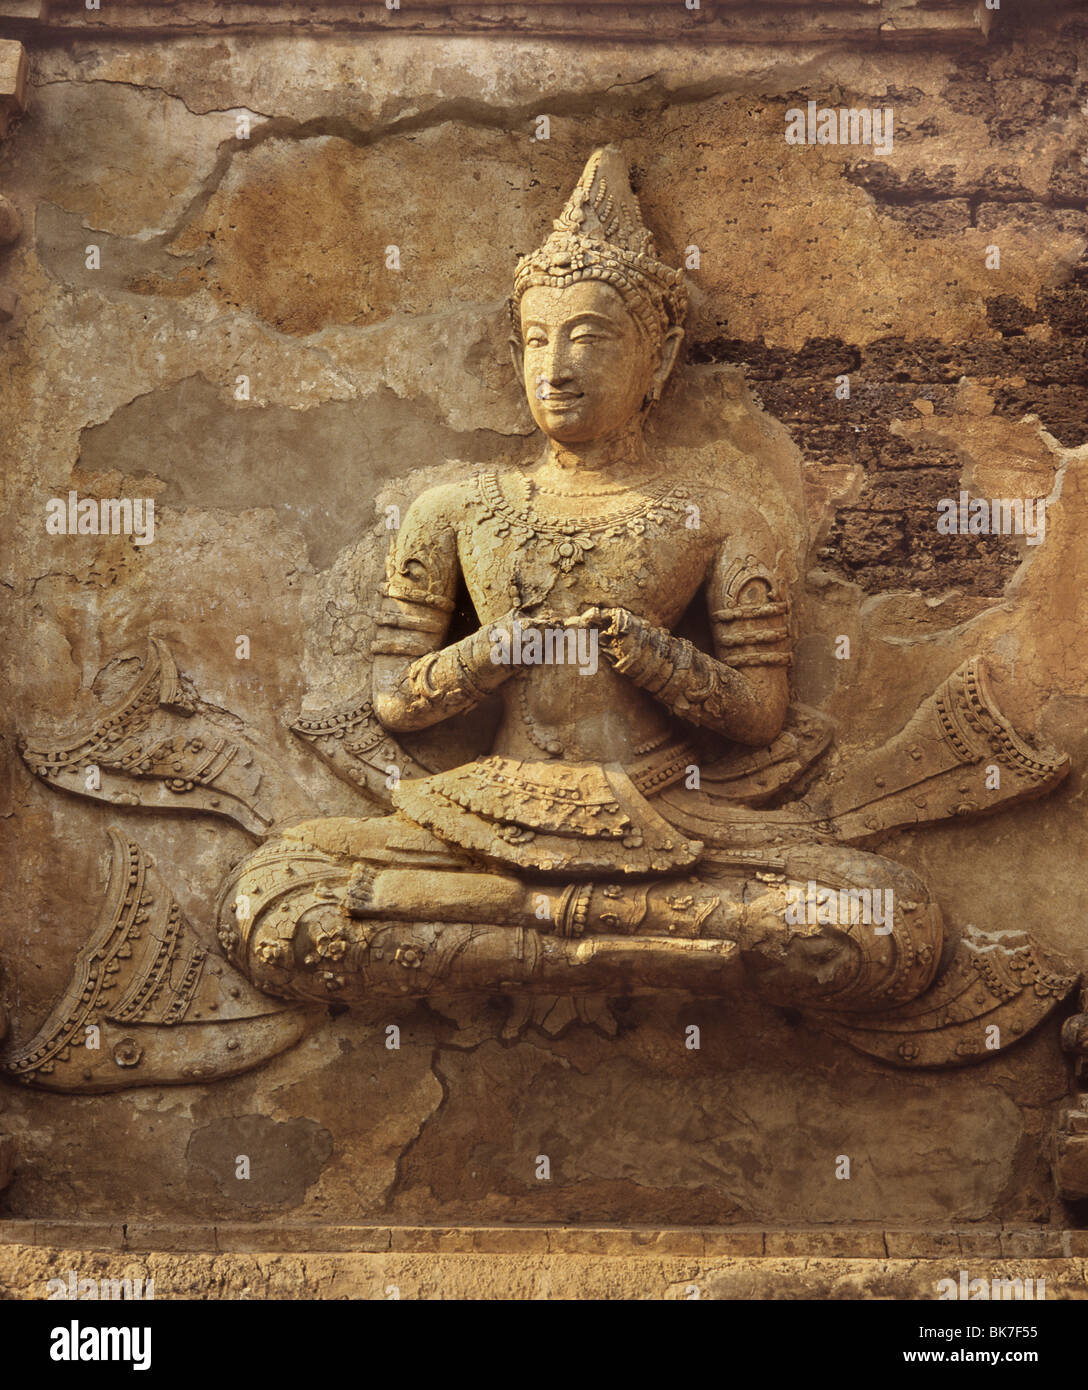 La figure en stuc datant du 16ème siècle, le Wat Chedi Ched Yod, Chiang Mai, Thaïlande, Asie du Sud-Est, Asie Banque D'Images